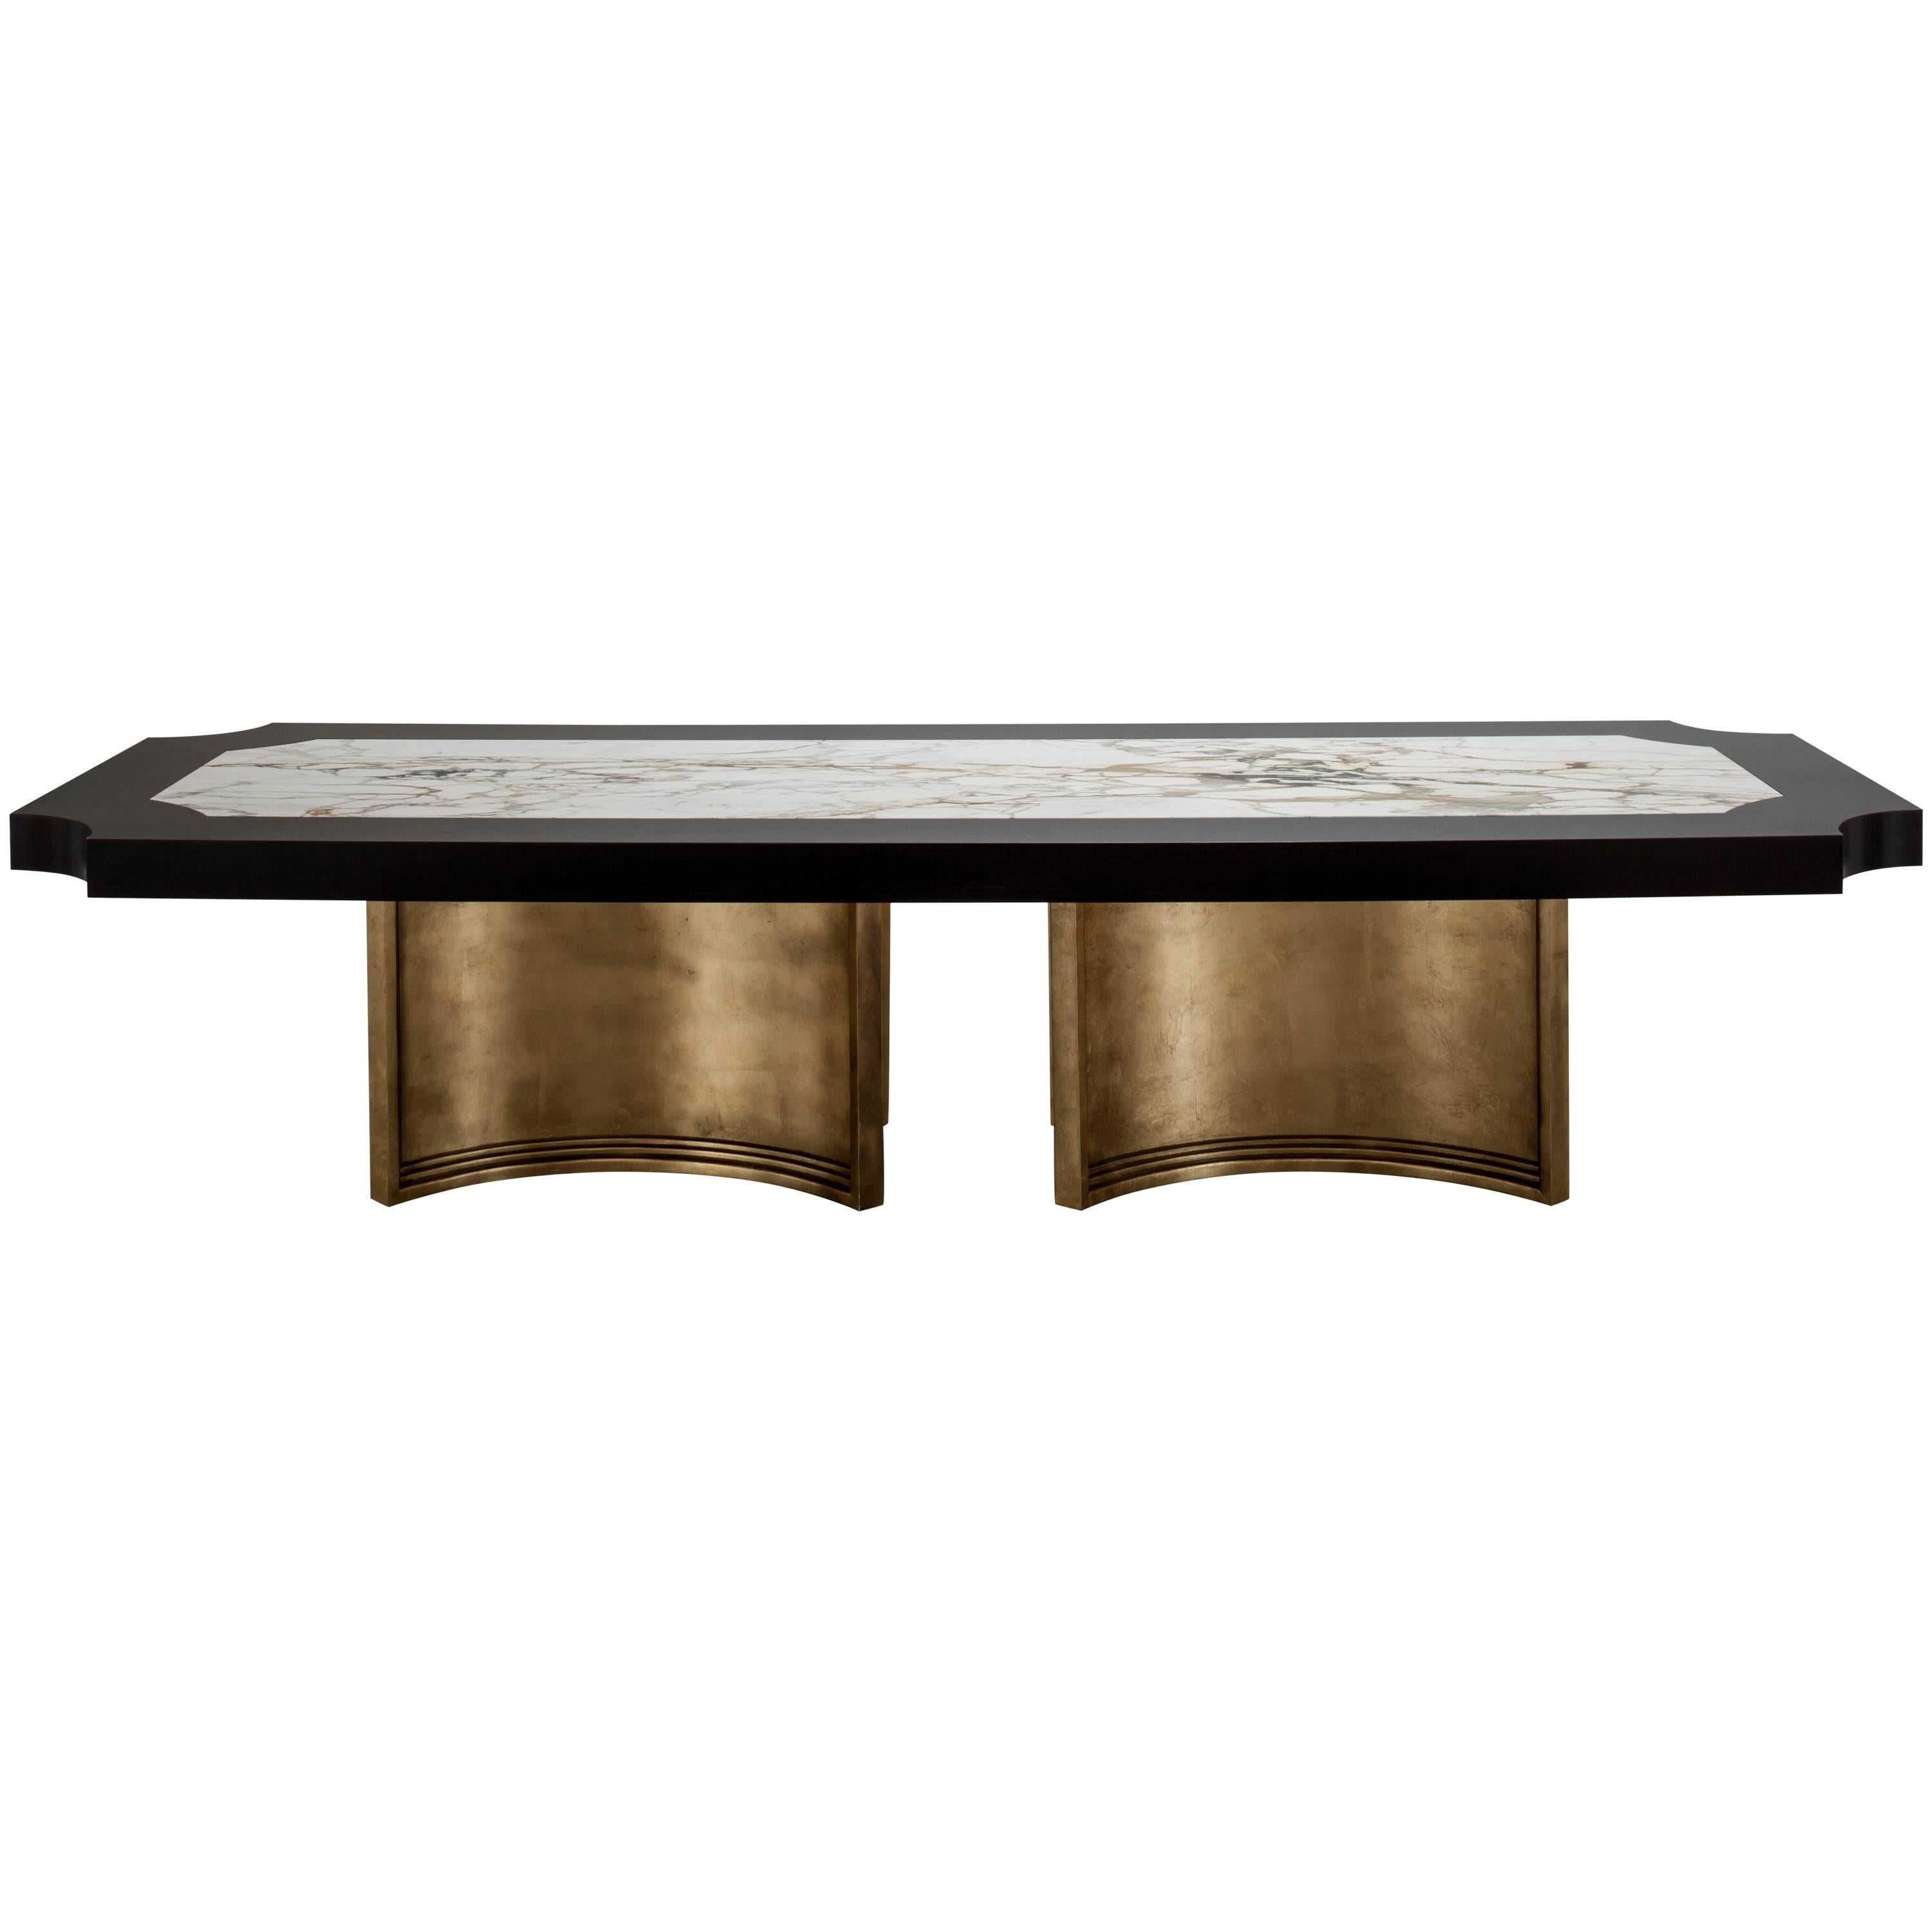 BRUSSELS DINING TABLE – Tisch aus Ebenholz, Eiche, Carrara-Marmor und Goldleder